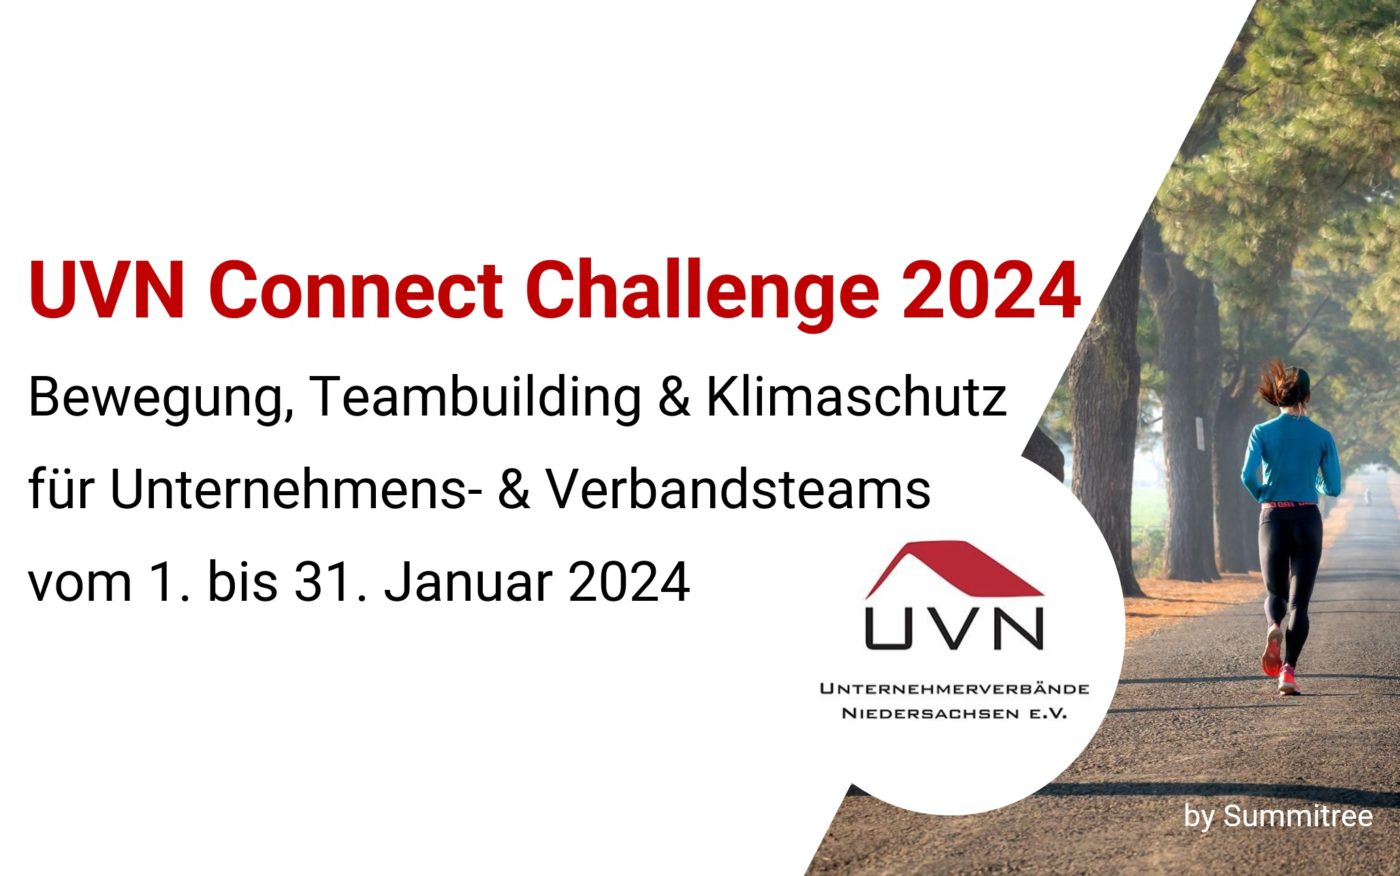 ANMELDUNG LÄUFT! UVN Connect Challenge by Summitree vom 1. – 31. Januar 2024 - Gesundheit, Teamgeist & Klimaschutz